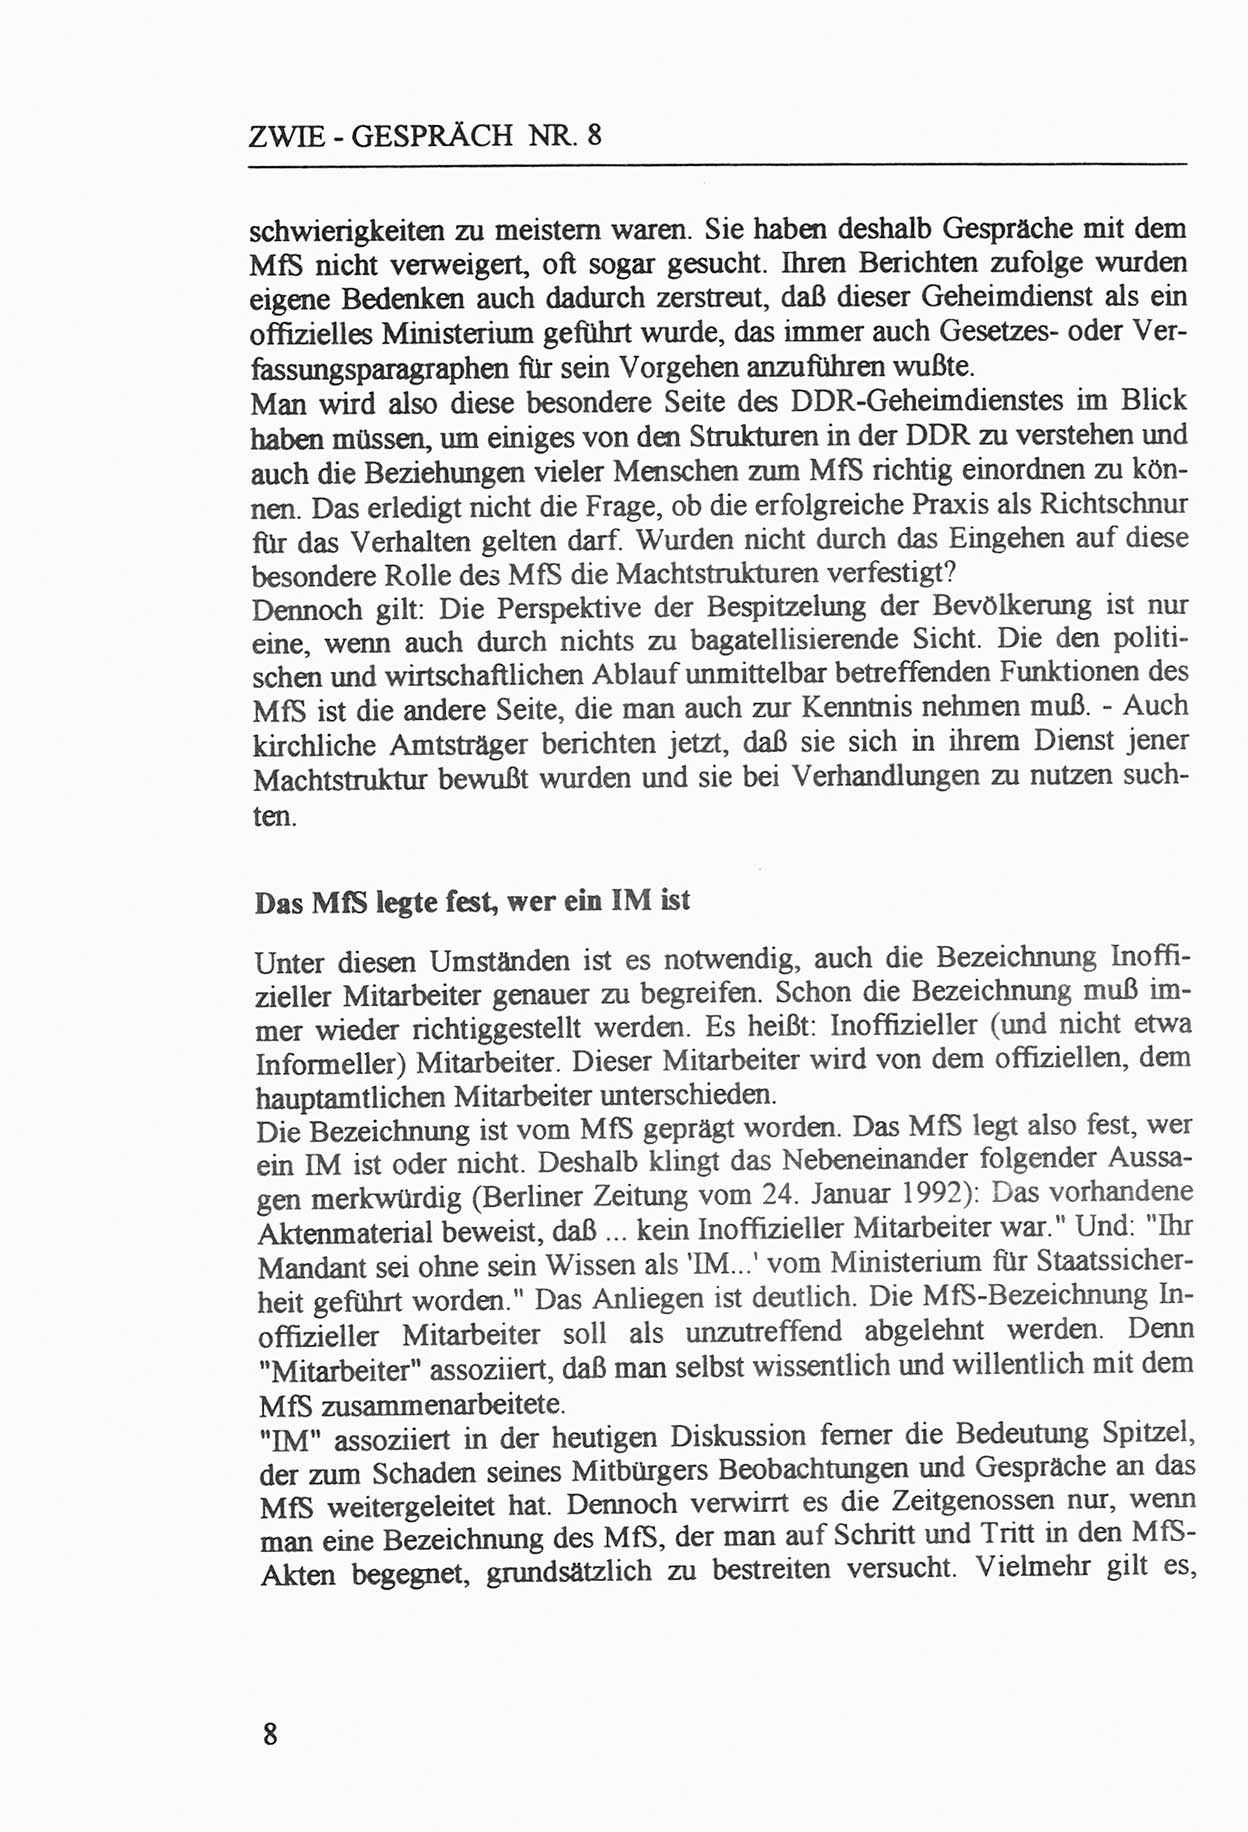 Zwie-Gespräch, Beiträge zur Aufarbeitung der Staatssicherheits-Vergangenheit [Deutsche Demokratische Republik (DDR)], Ausgabe Nr. 8, Berlin 1992, Seite 8 (Zwie-Gespr. Ausg. 8 1992, S. 8)